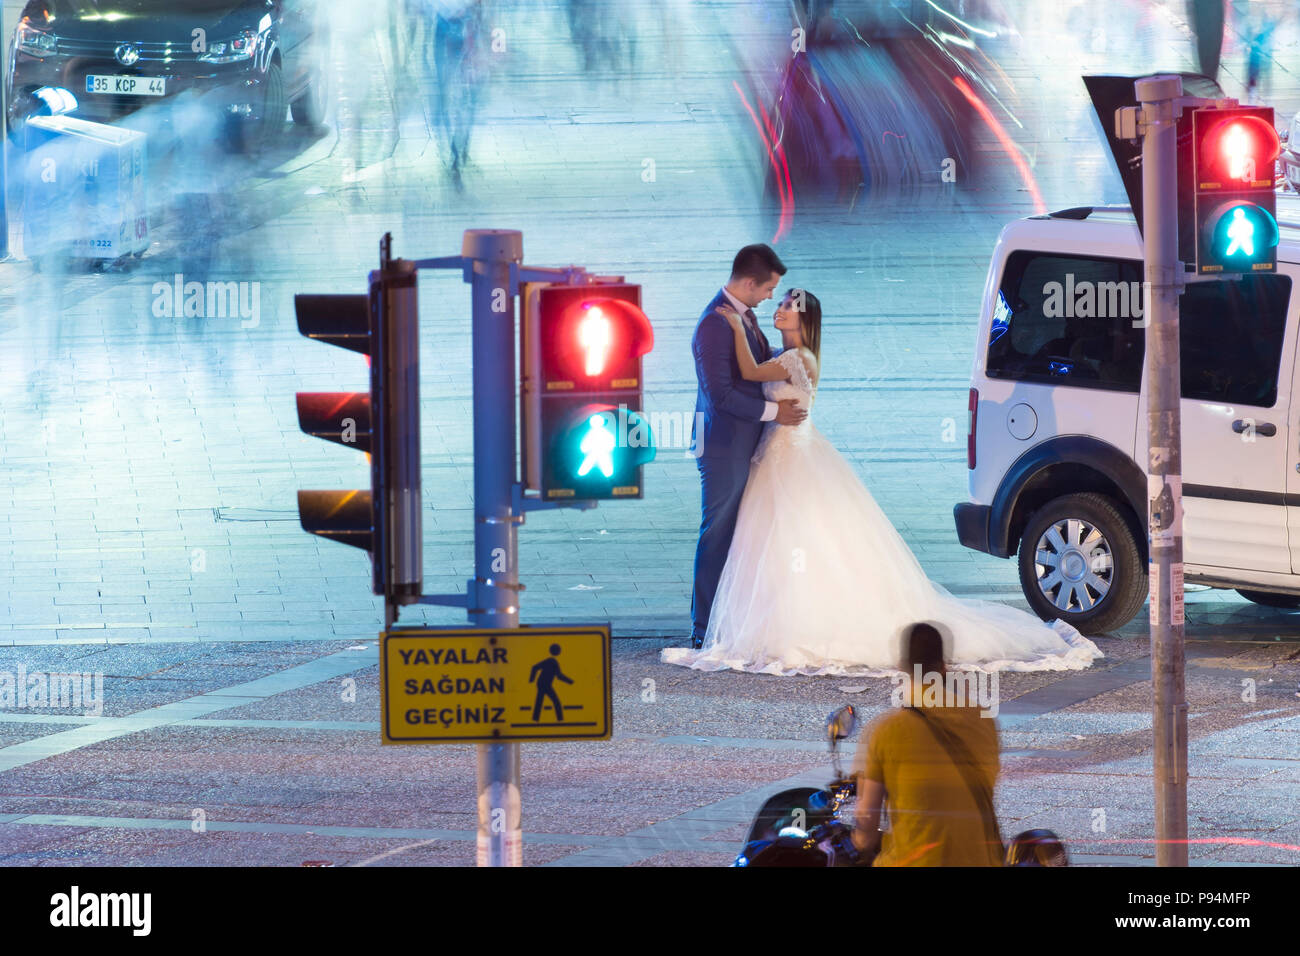 Hochzeit Braut und Bräutigam im Zentrum der Stadt bei Nacht Bräutigam Liebe Ehe Paare heiraten Stockfoto